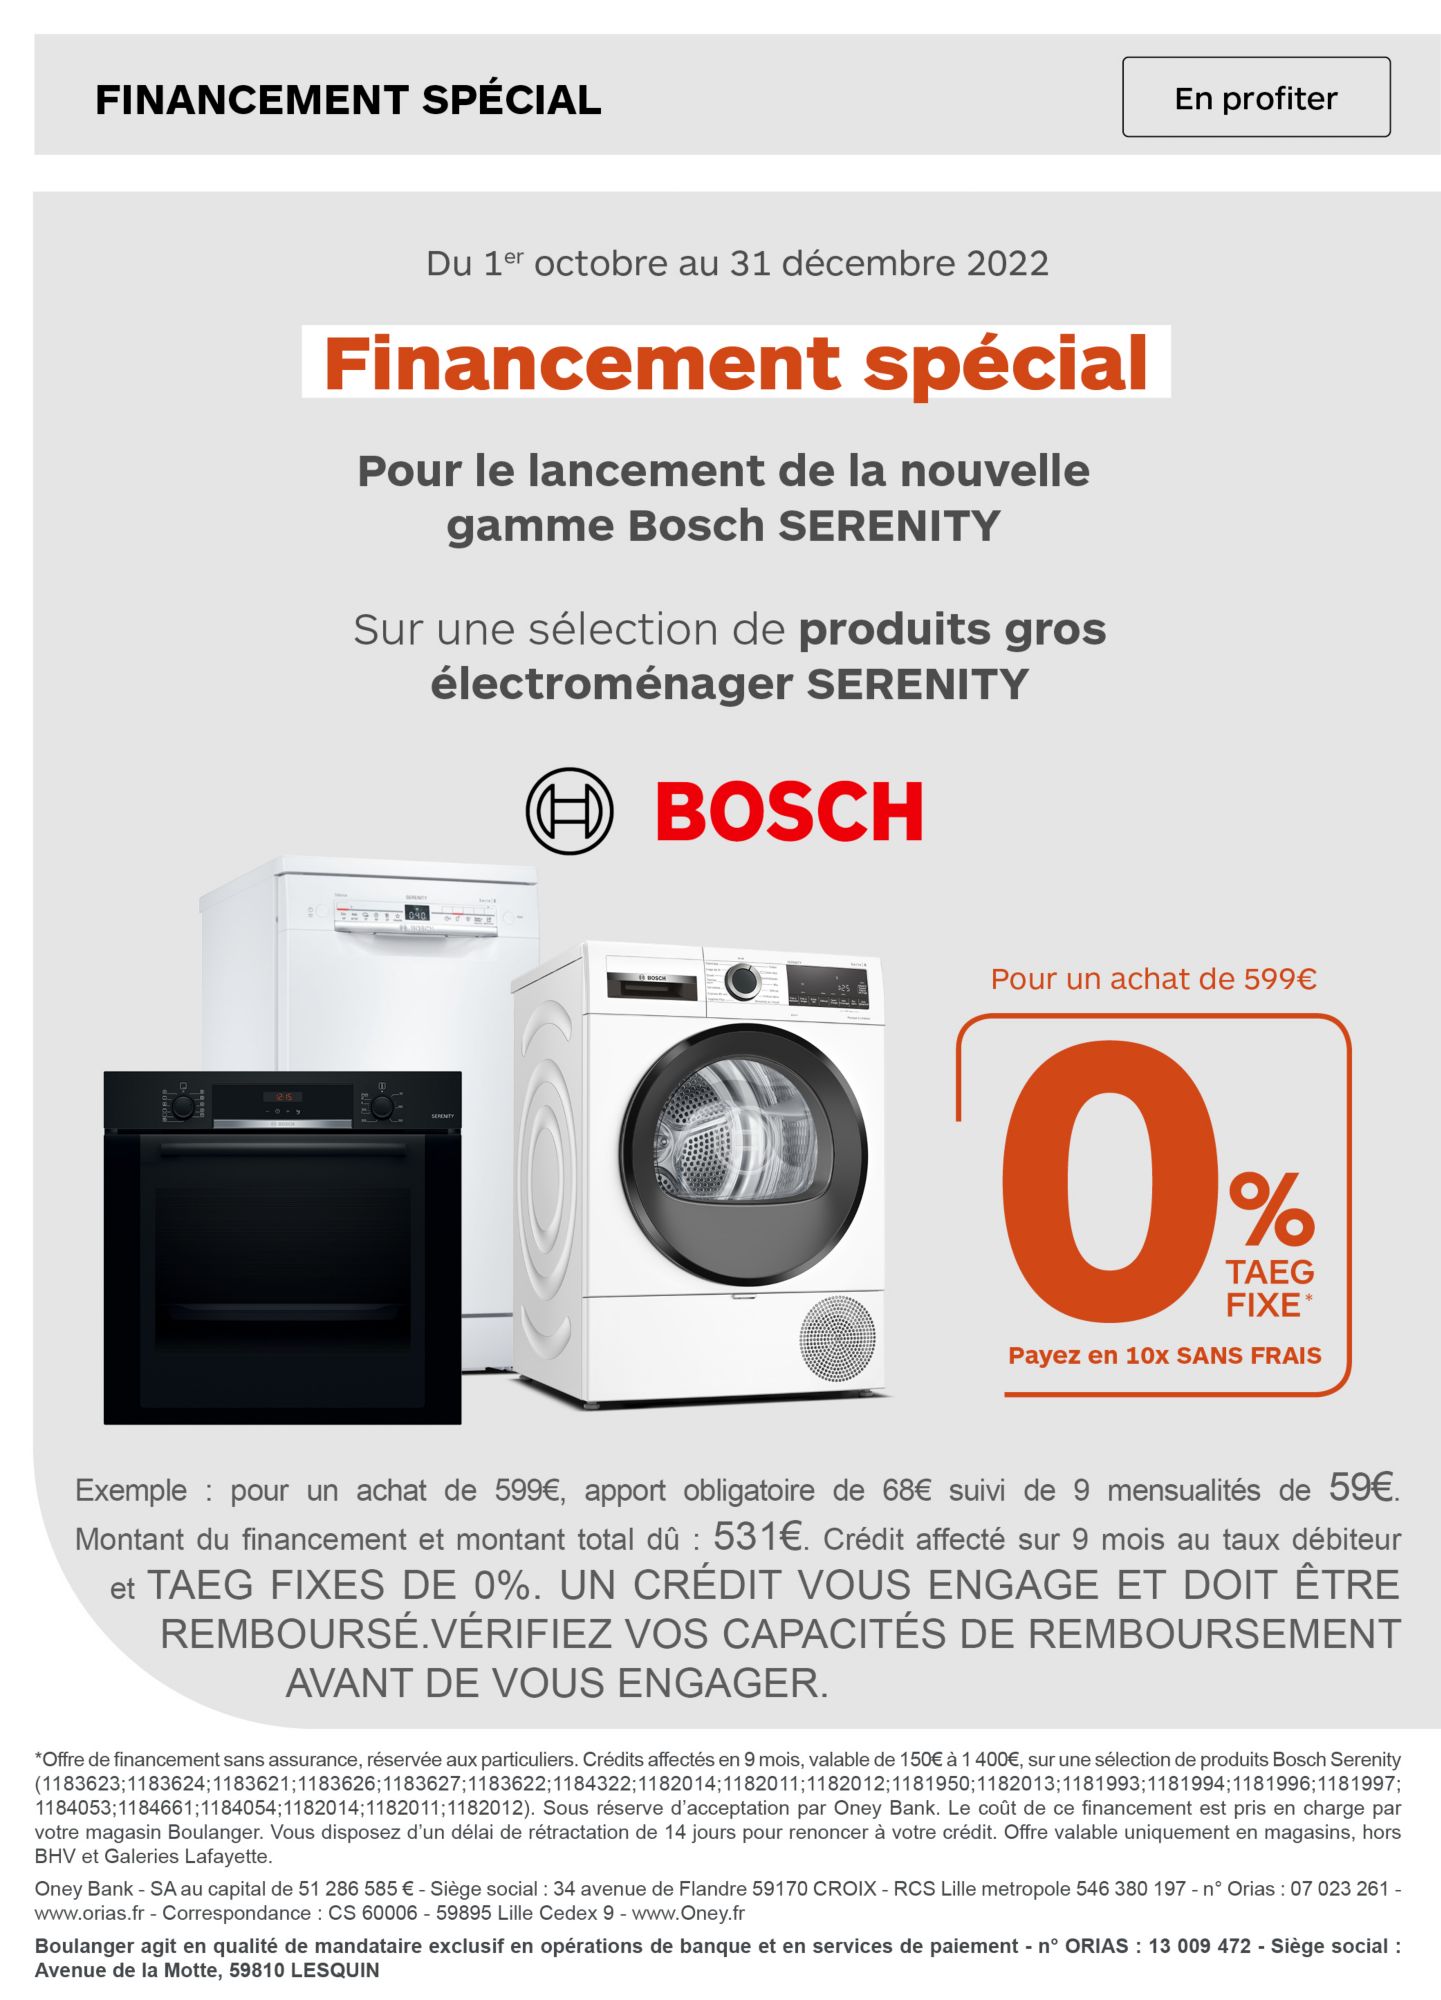 Financement 10 fois sans frais sur une selection de produits Bosch